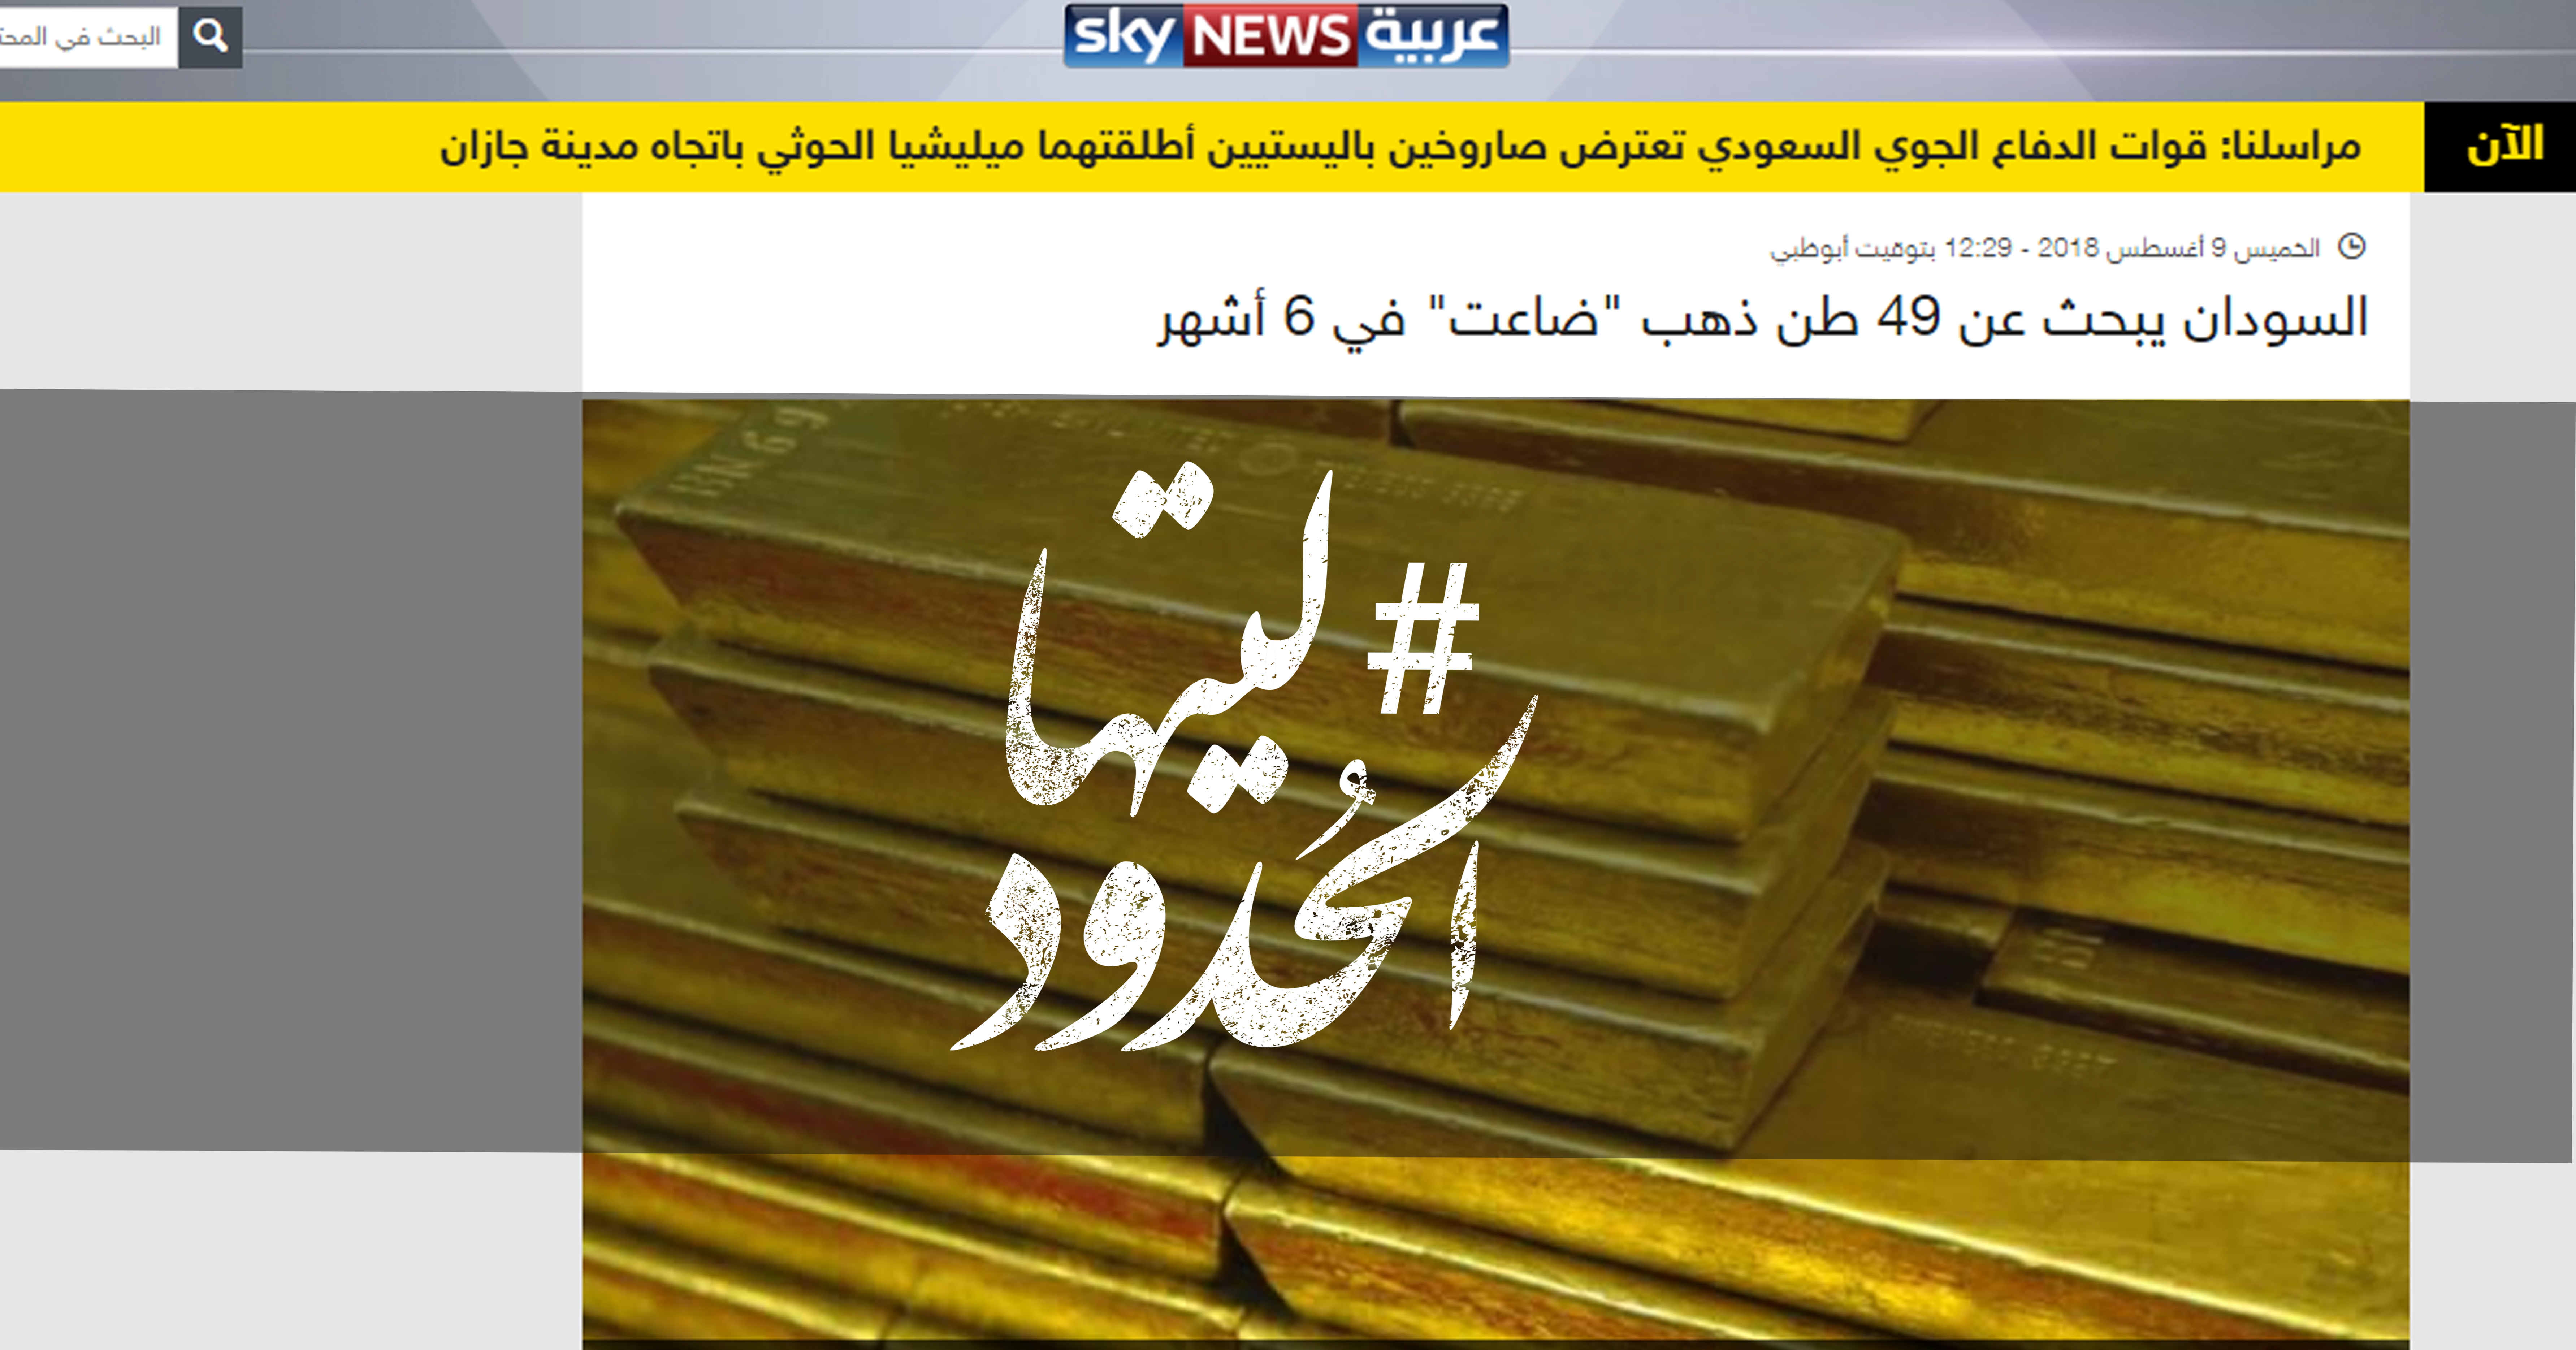 صورة السودان يبحث عن ٤٩ طن ذهب “ضاعت” في ٦ أشهر